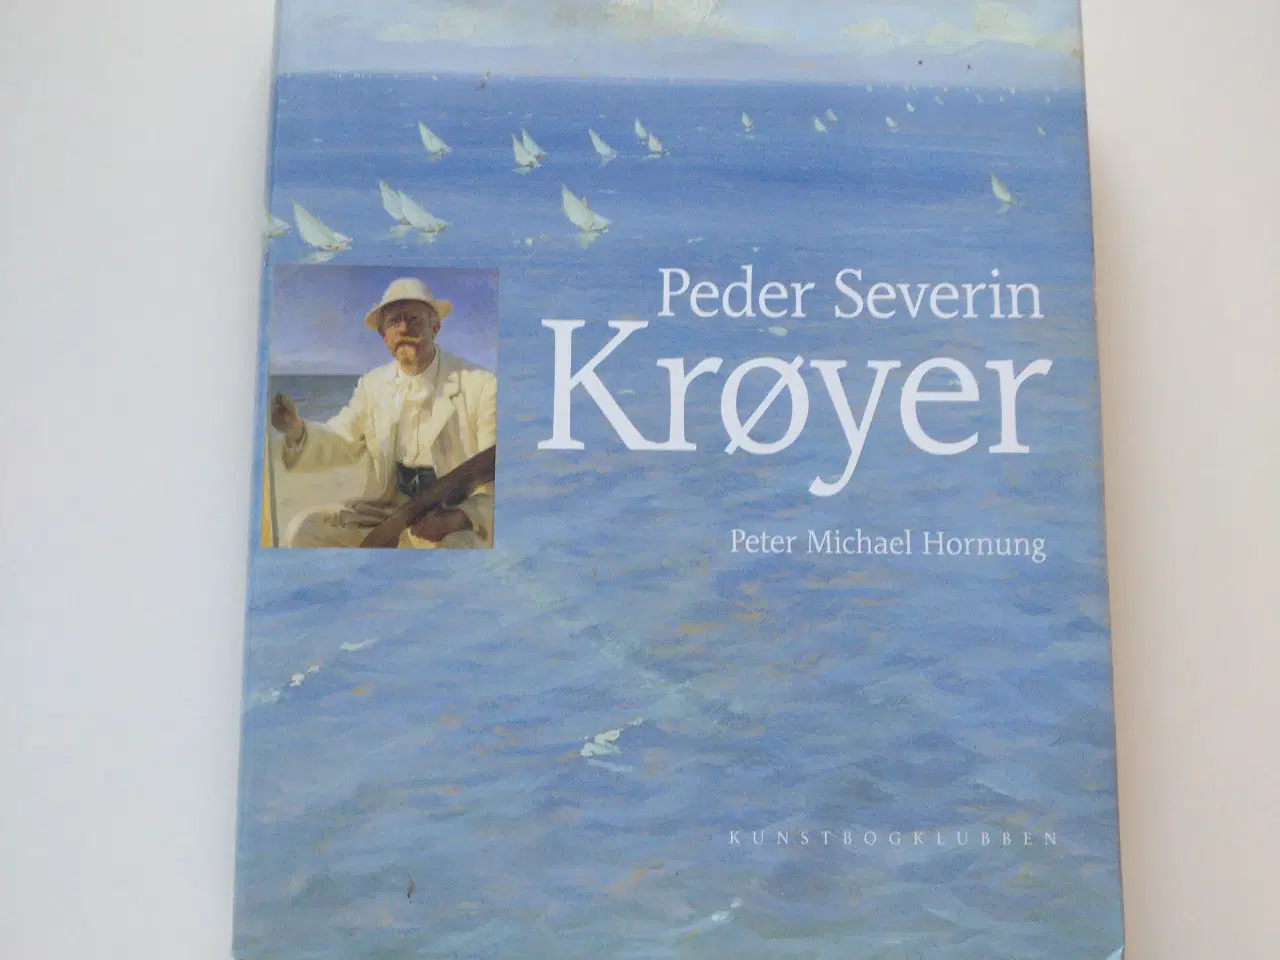 Billede 1 - Bog Peder Severin Krøyer